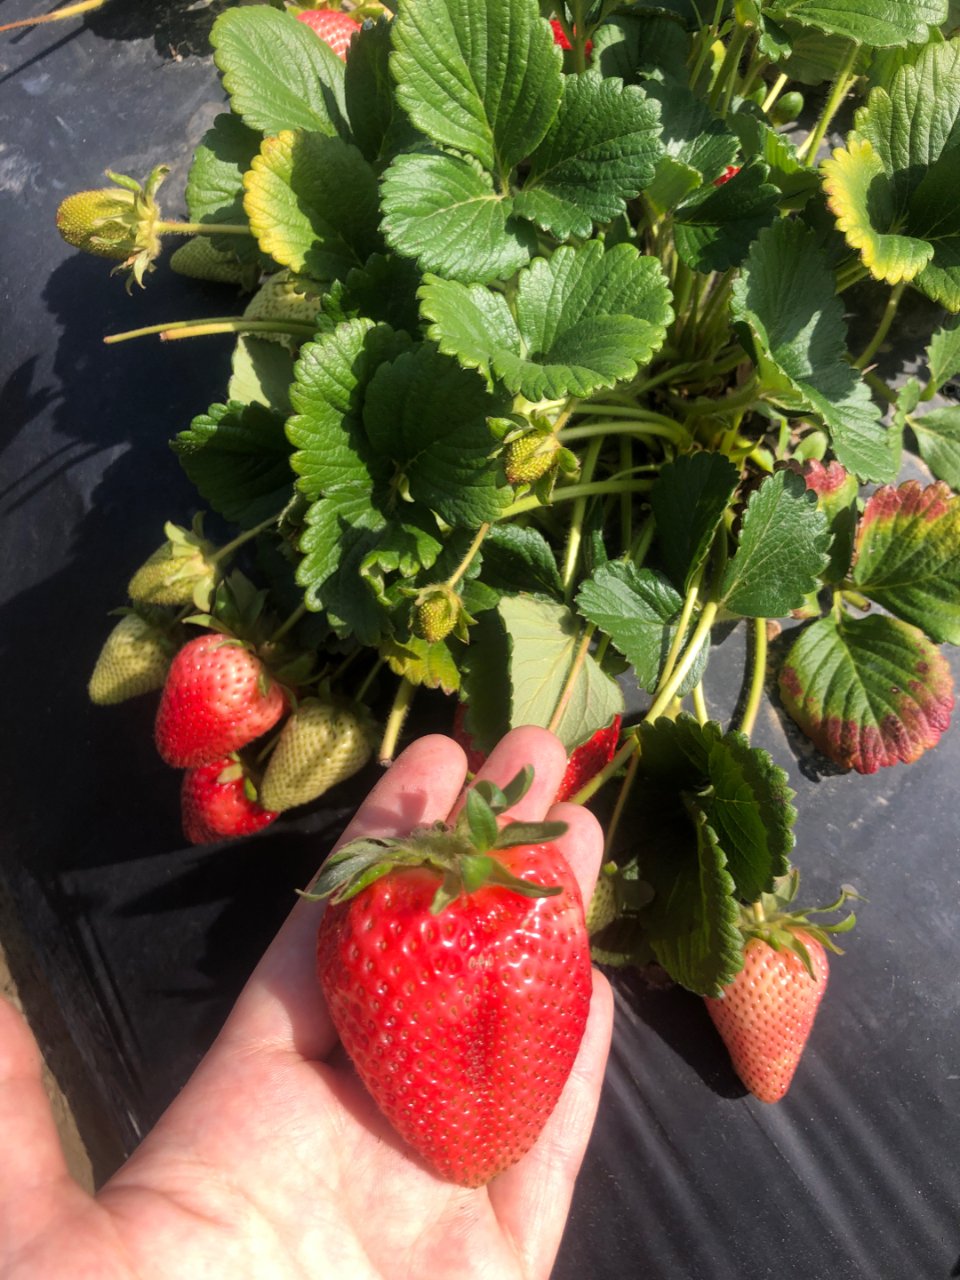 第一次采草莓🍓自己摘的就是甜🥳Chino...